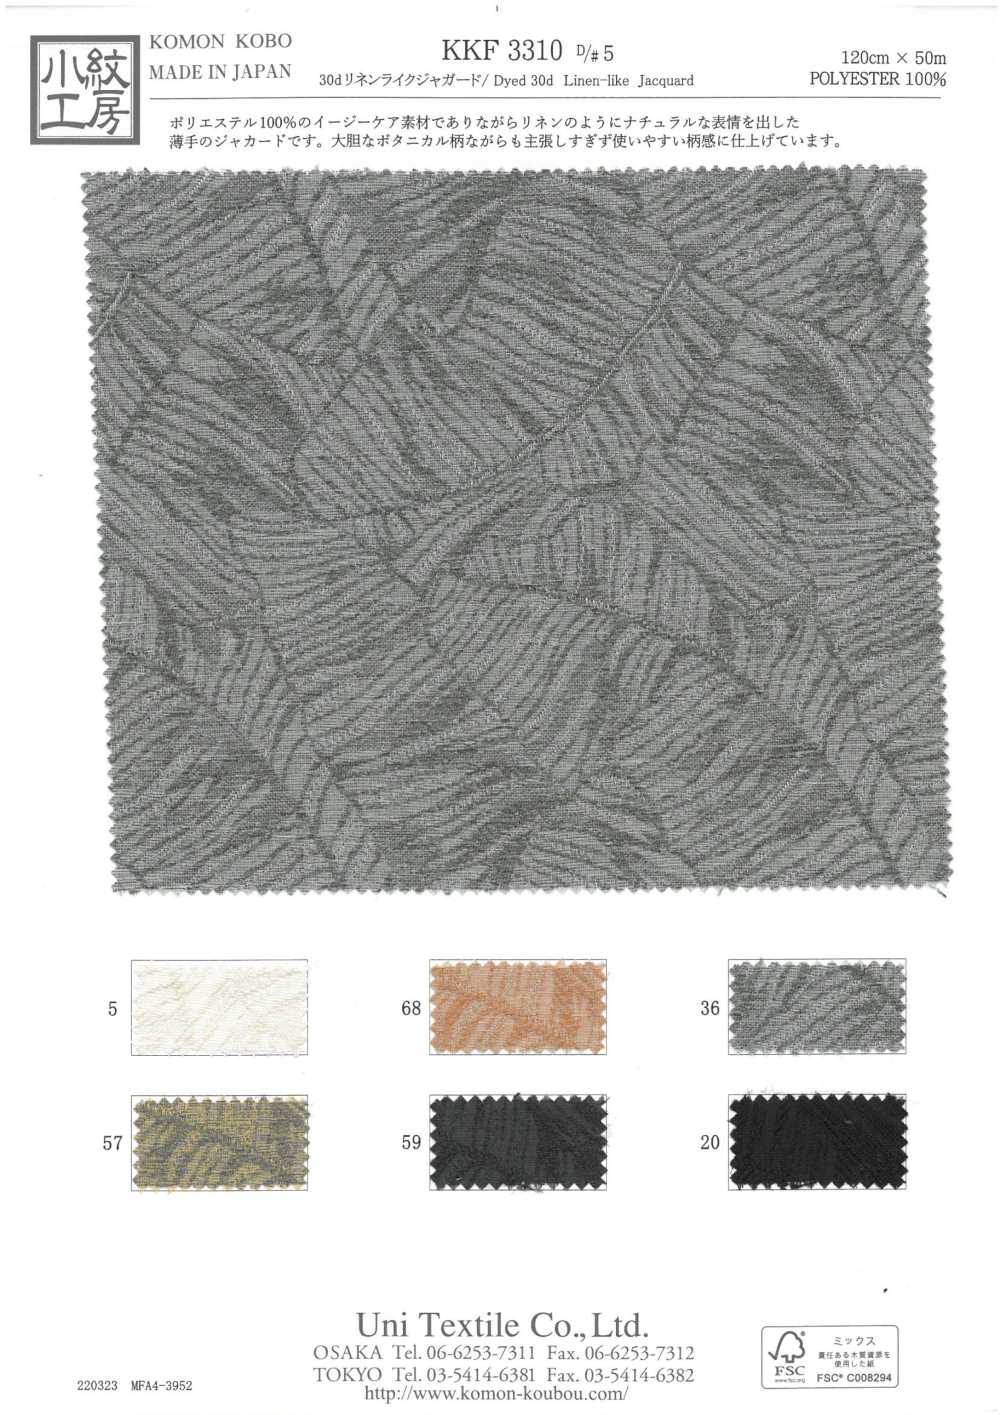 KKF3310-D5 30d Leinenähnlicher Jacquard[Textilgewebe] Uni Textile